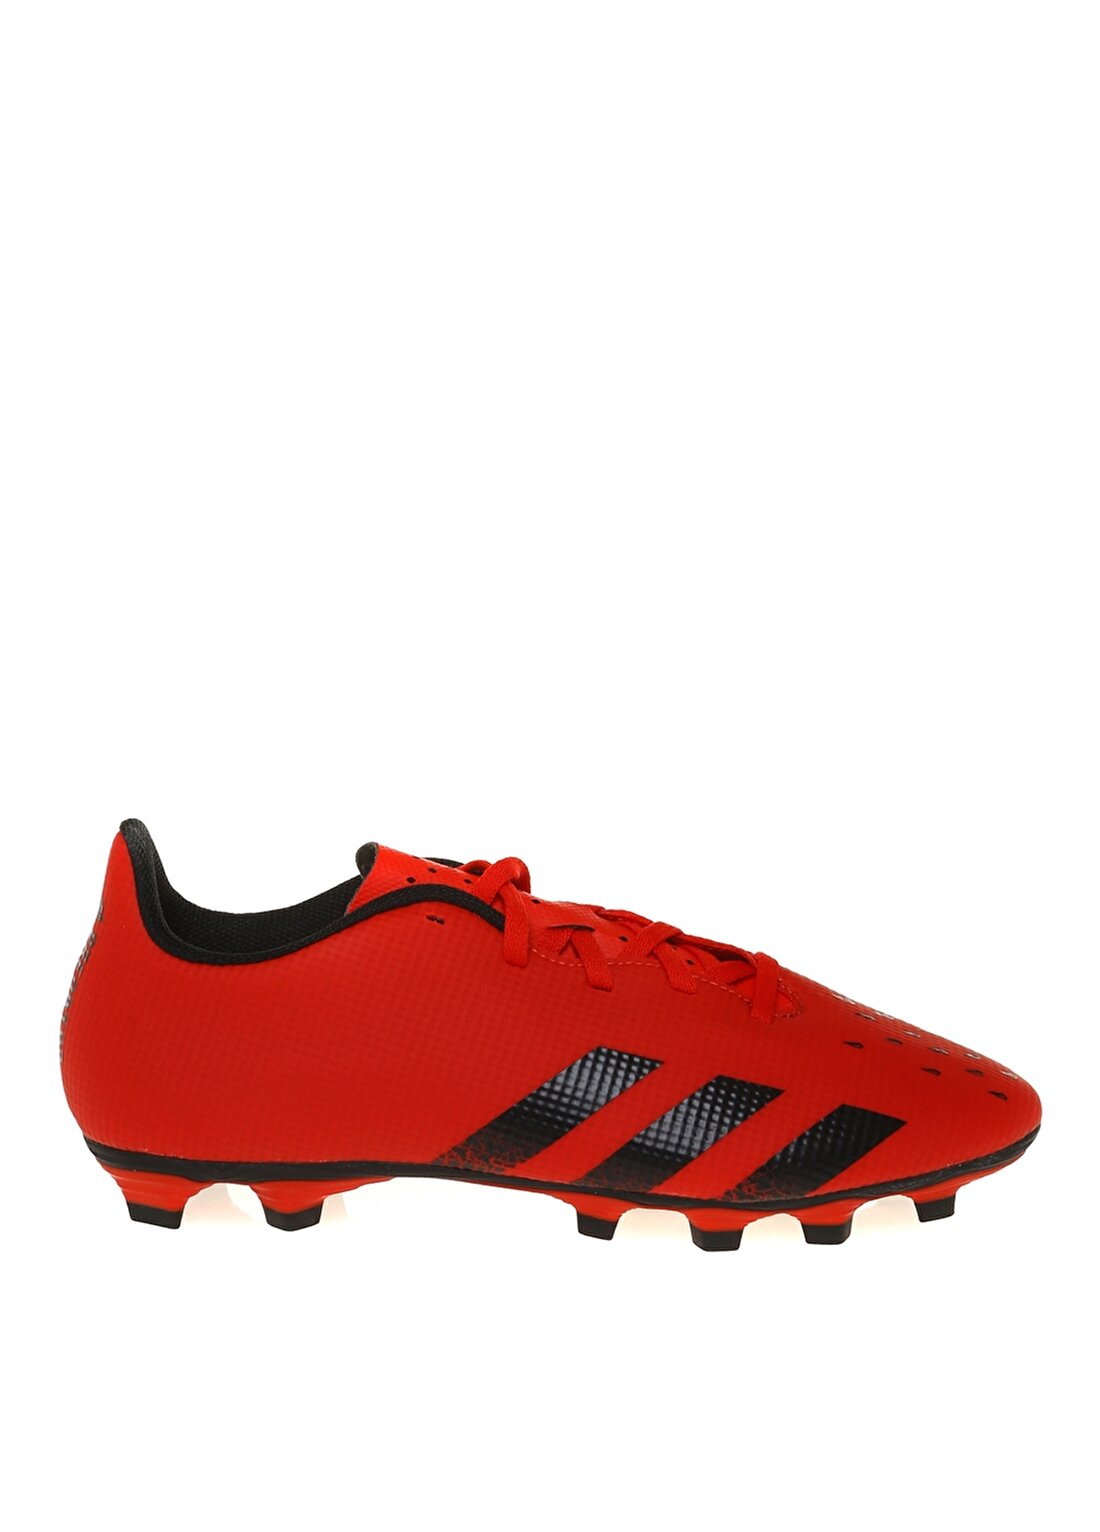 Adidas FY6319 Predator Freak .4 Fxg Kırmızı-Siyah Erkek Futbol Ayakkabısı